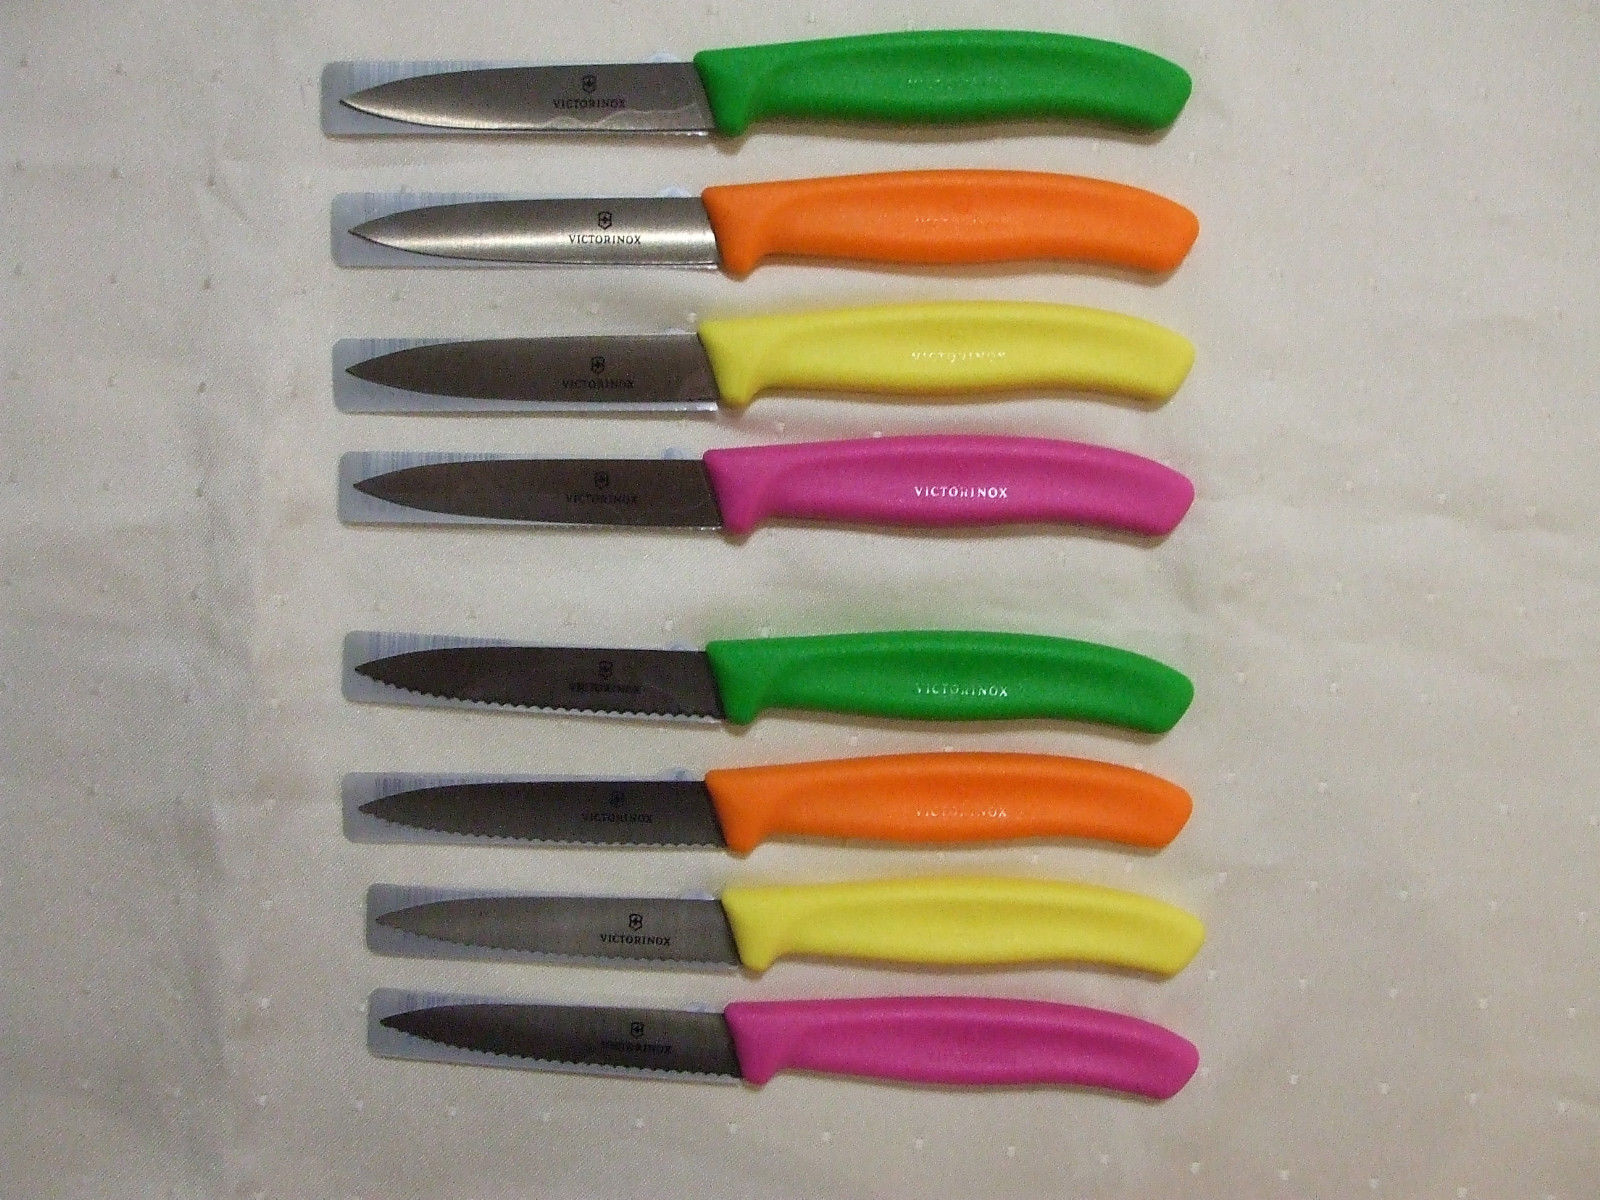 VICTORINOX FARBAUSWAHL  Messer Küchenmesser Gemüsemesser grün orange gelb pink